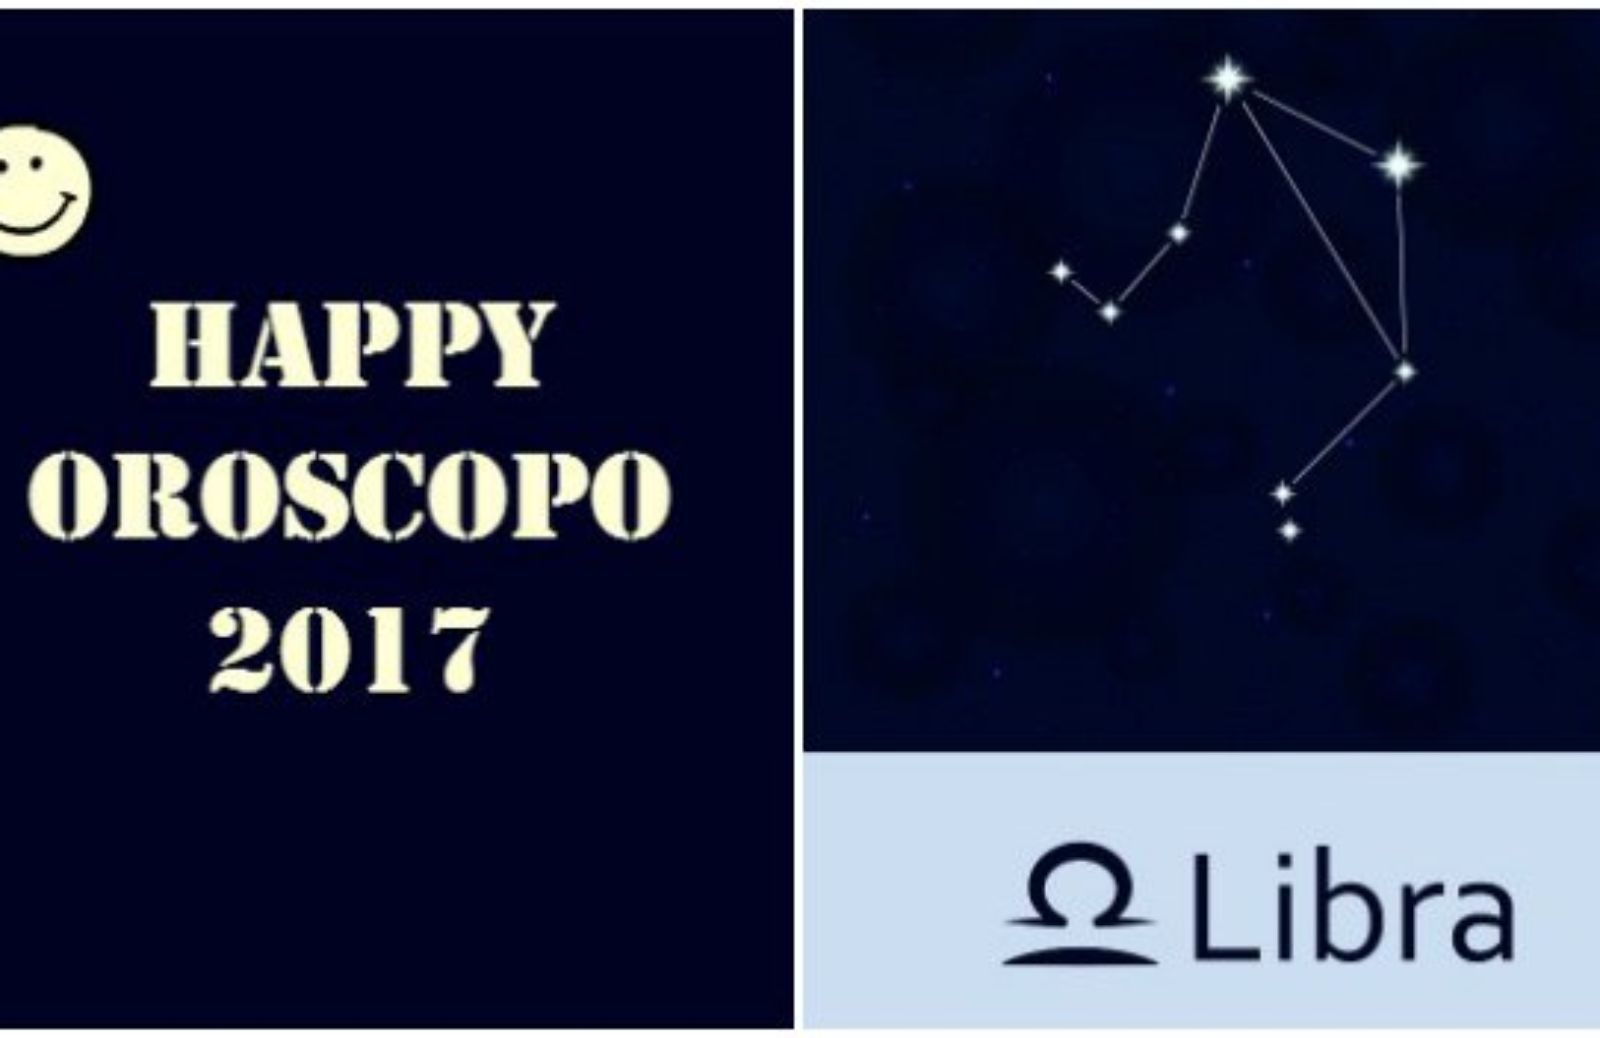 Happy Oroscopo 2017: il segno della Bilancia